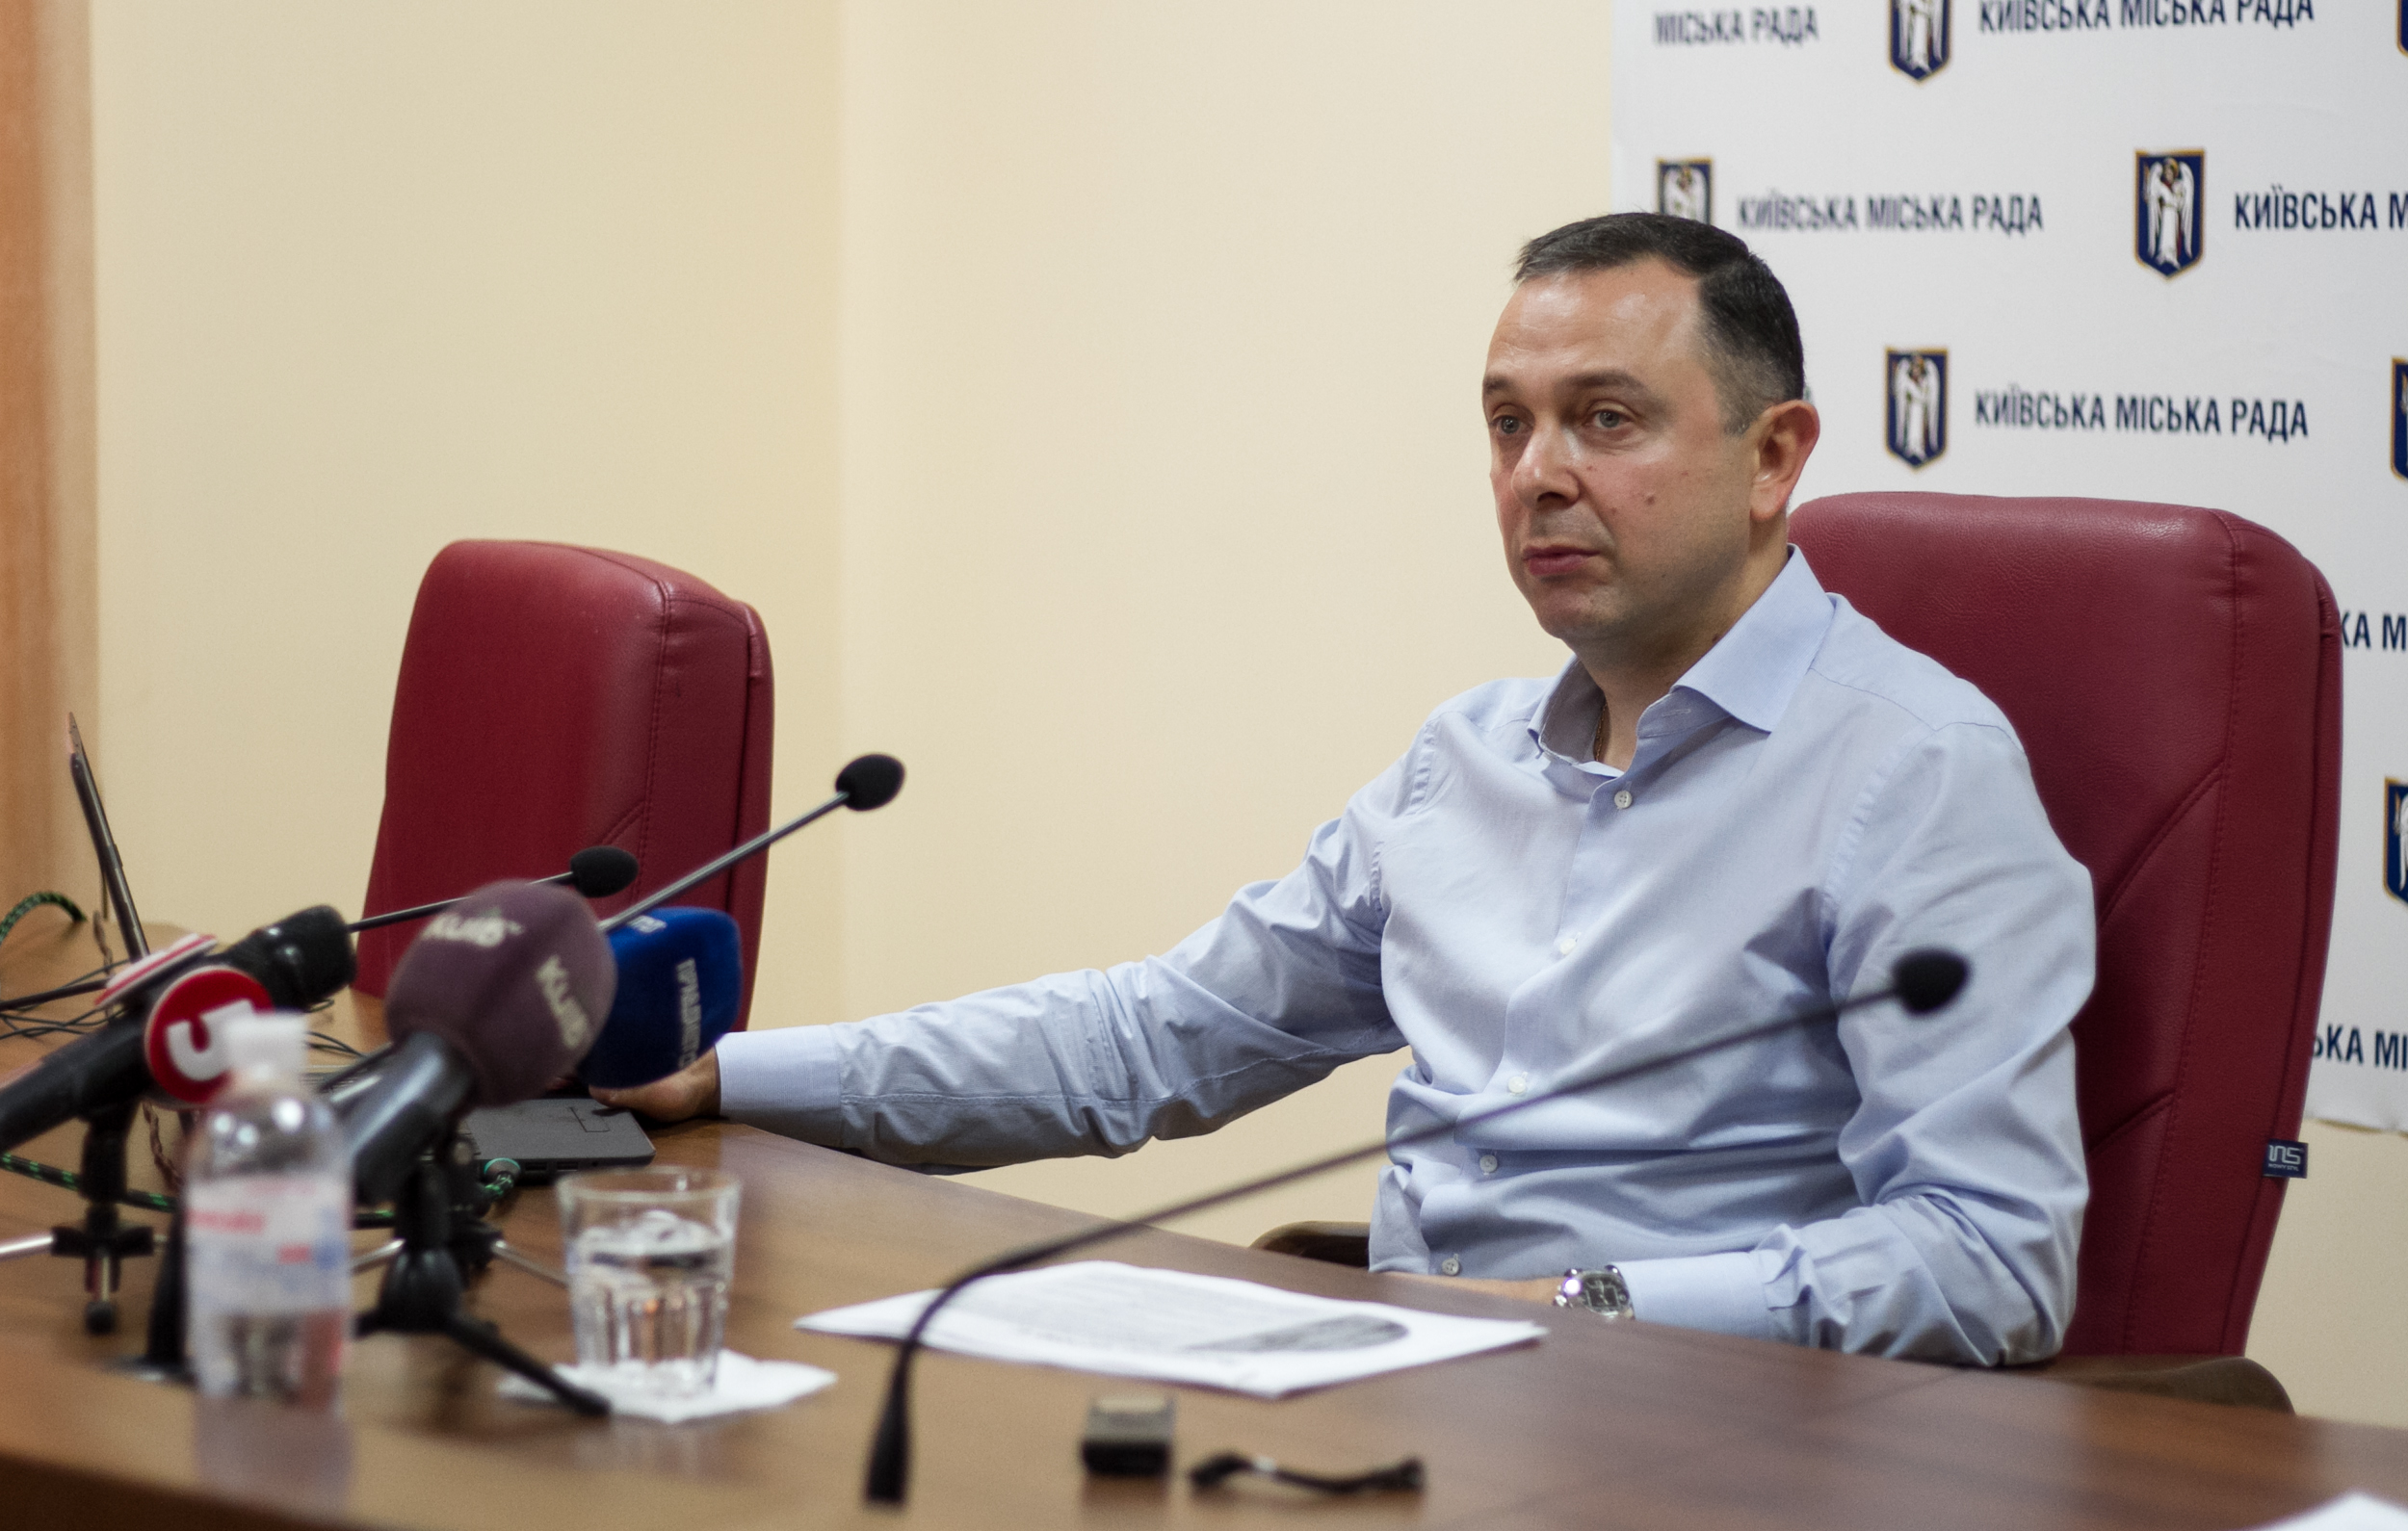 Кличко назначил Вадима Гутцайта директором департамента молодежи и спорта КГГА